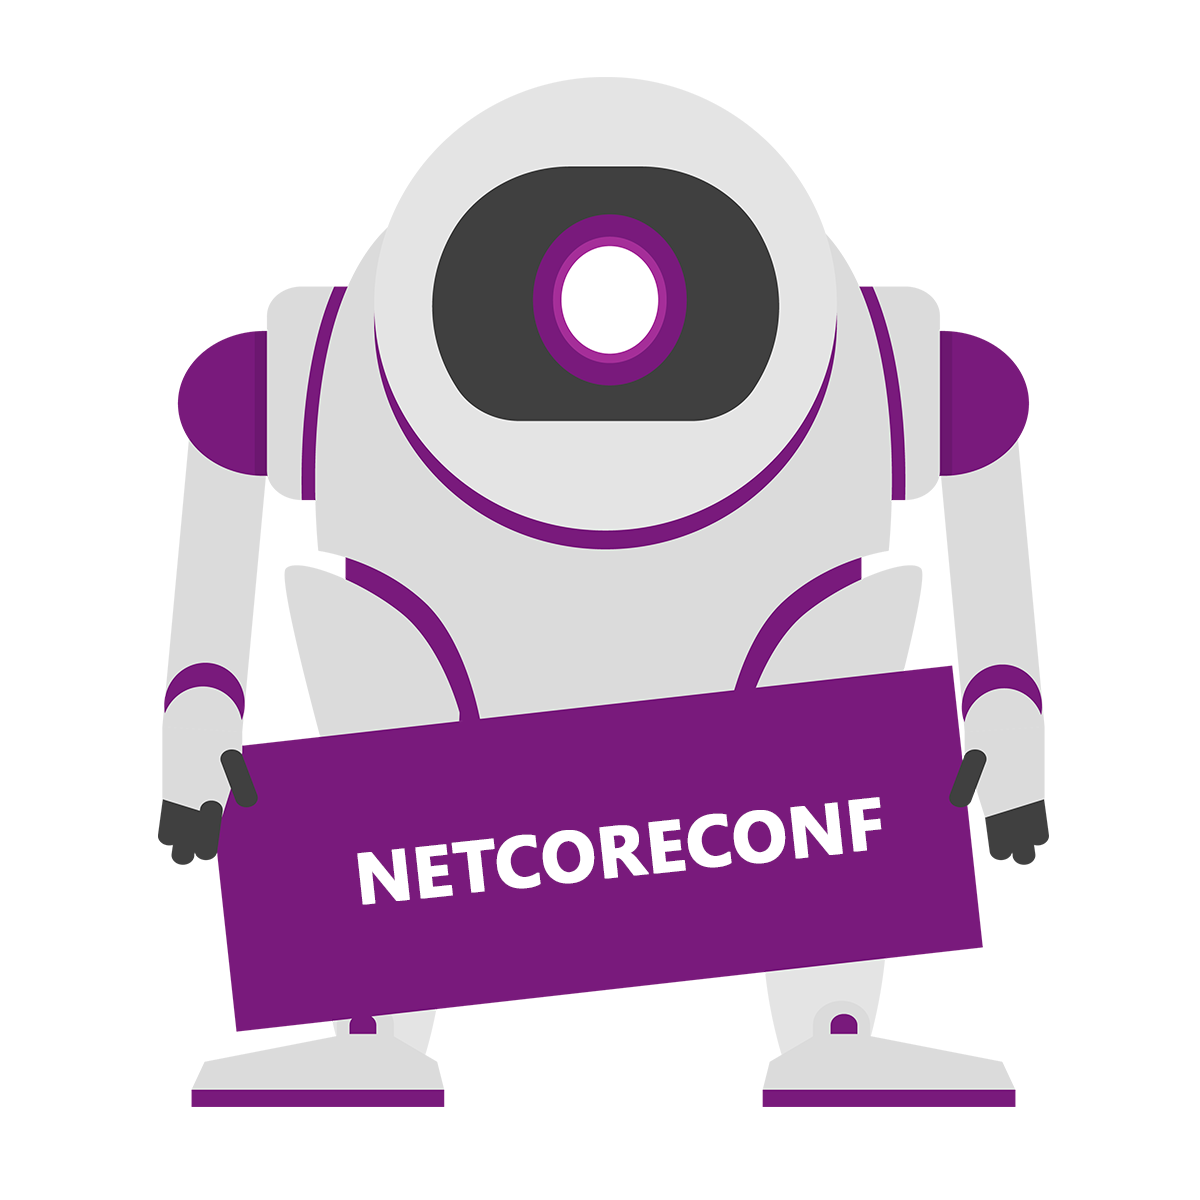 [Eventos] Netcoreconf Barcelona 2019